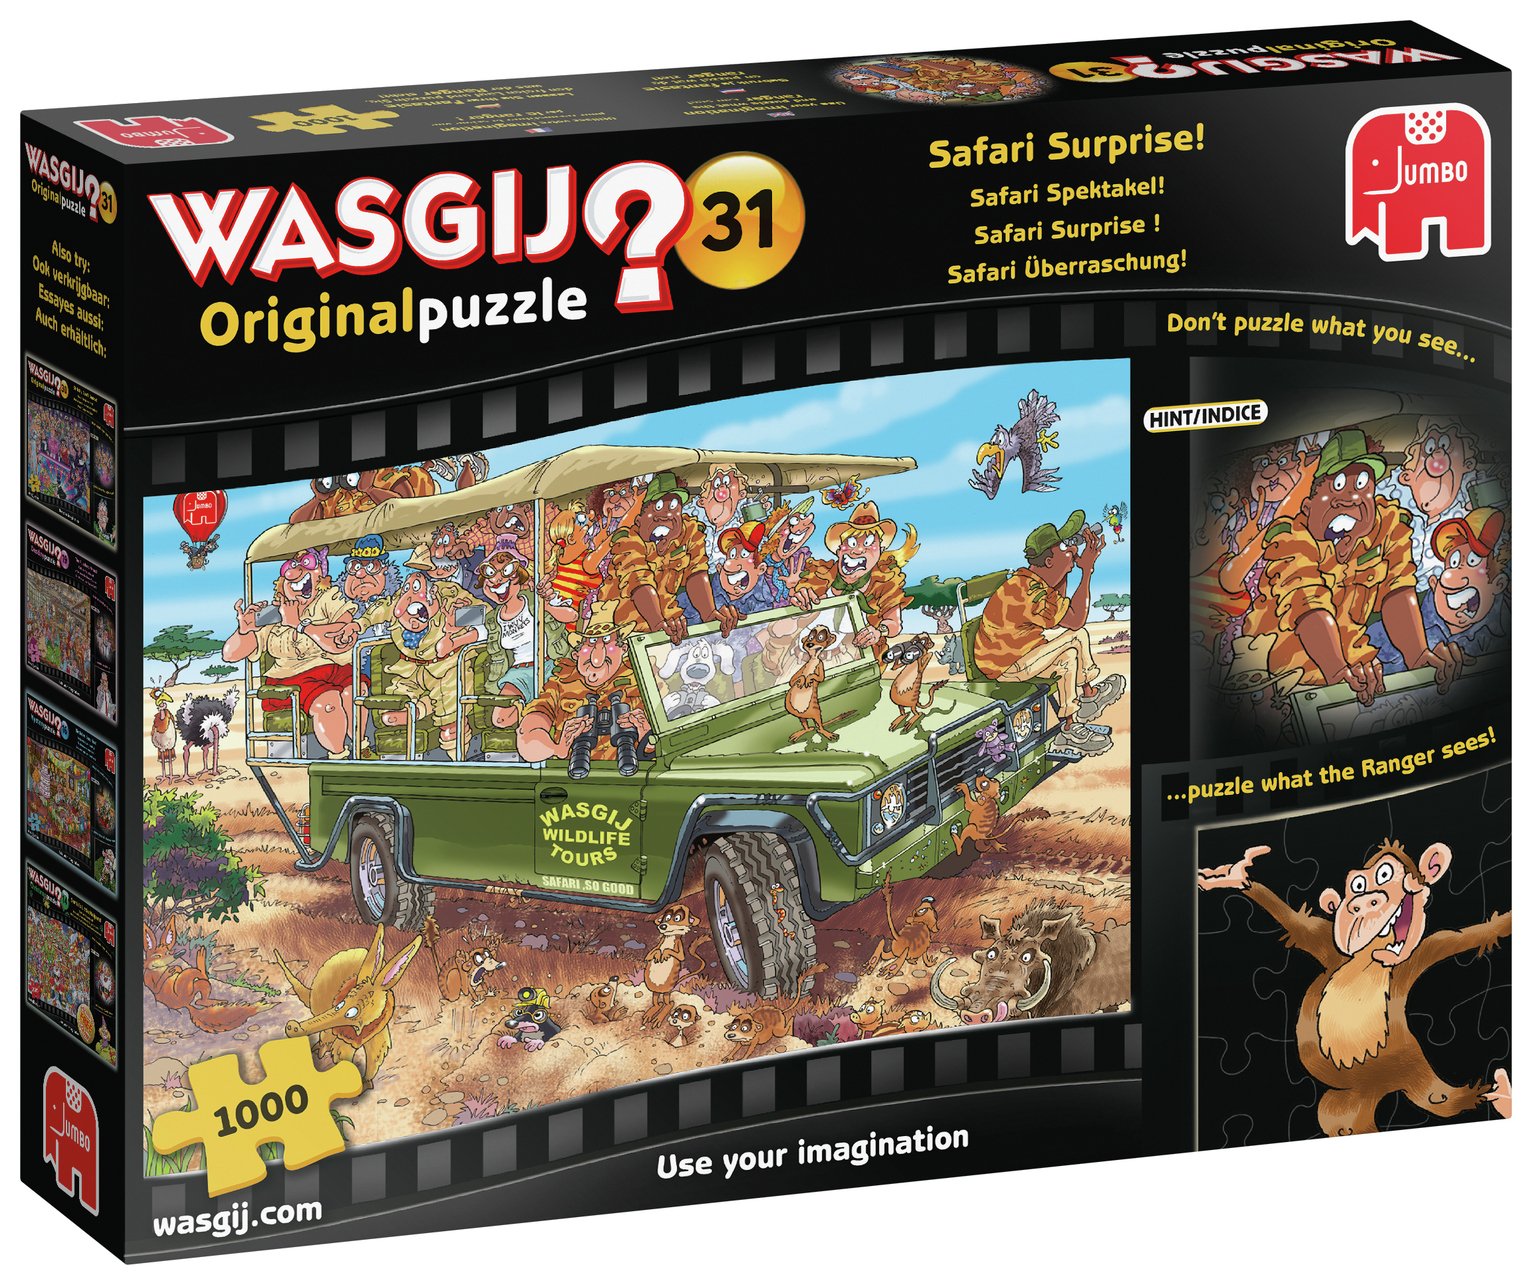 Wasgij Original 31 Safari Surprise Puzzle Review